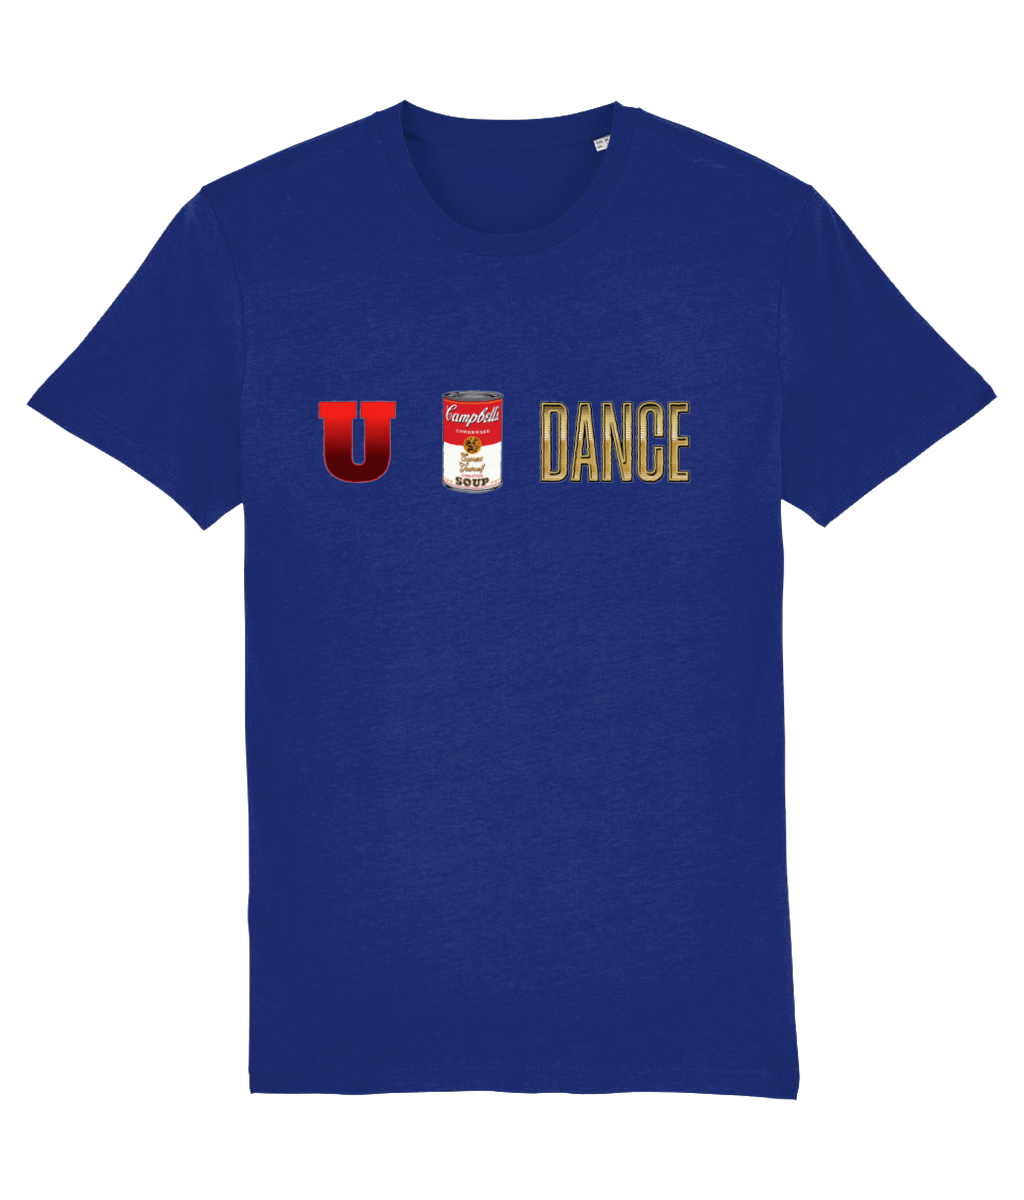 U Can Dance T-shirt Organic Cotton T-shirt